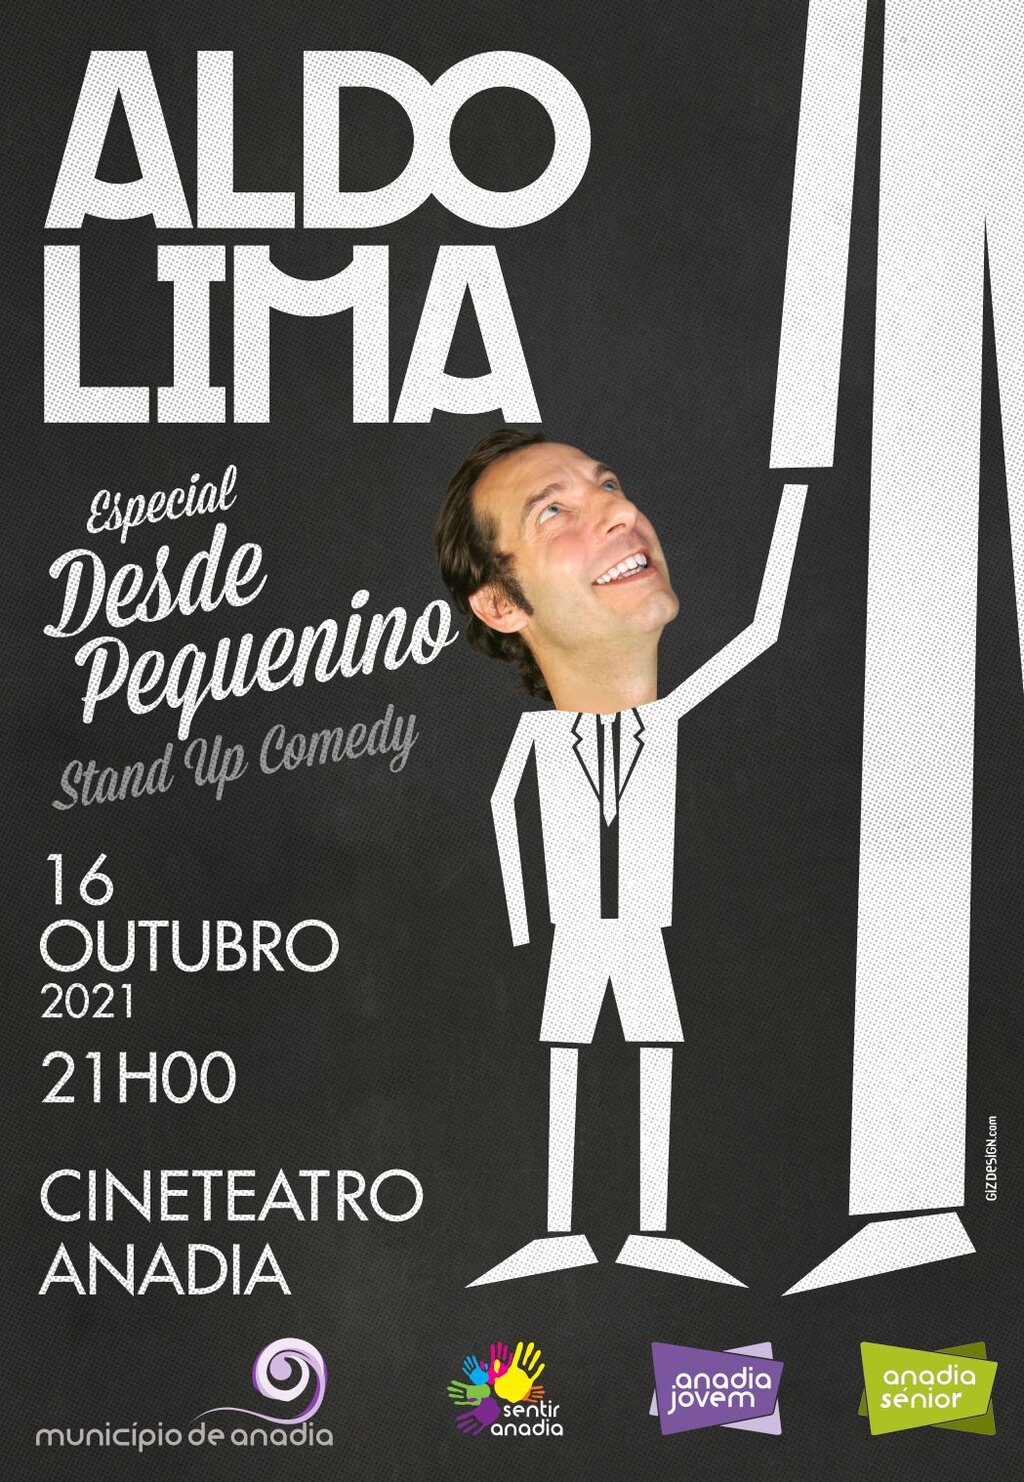 Aldo Lima "Especial desde pequenino - Stand Up Comedy"